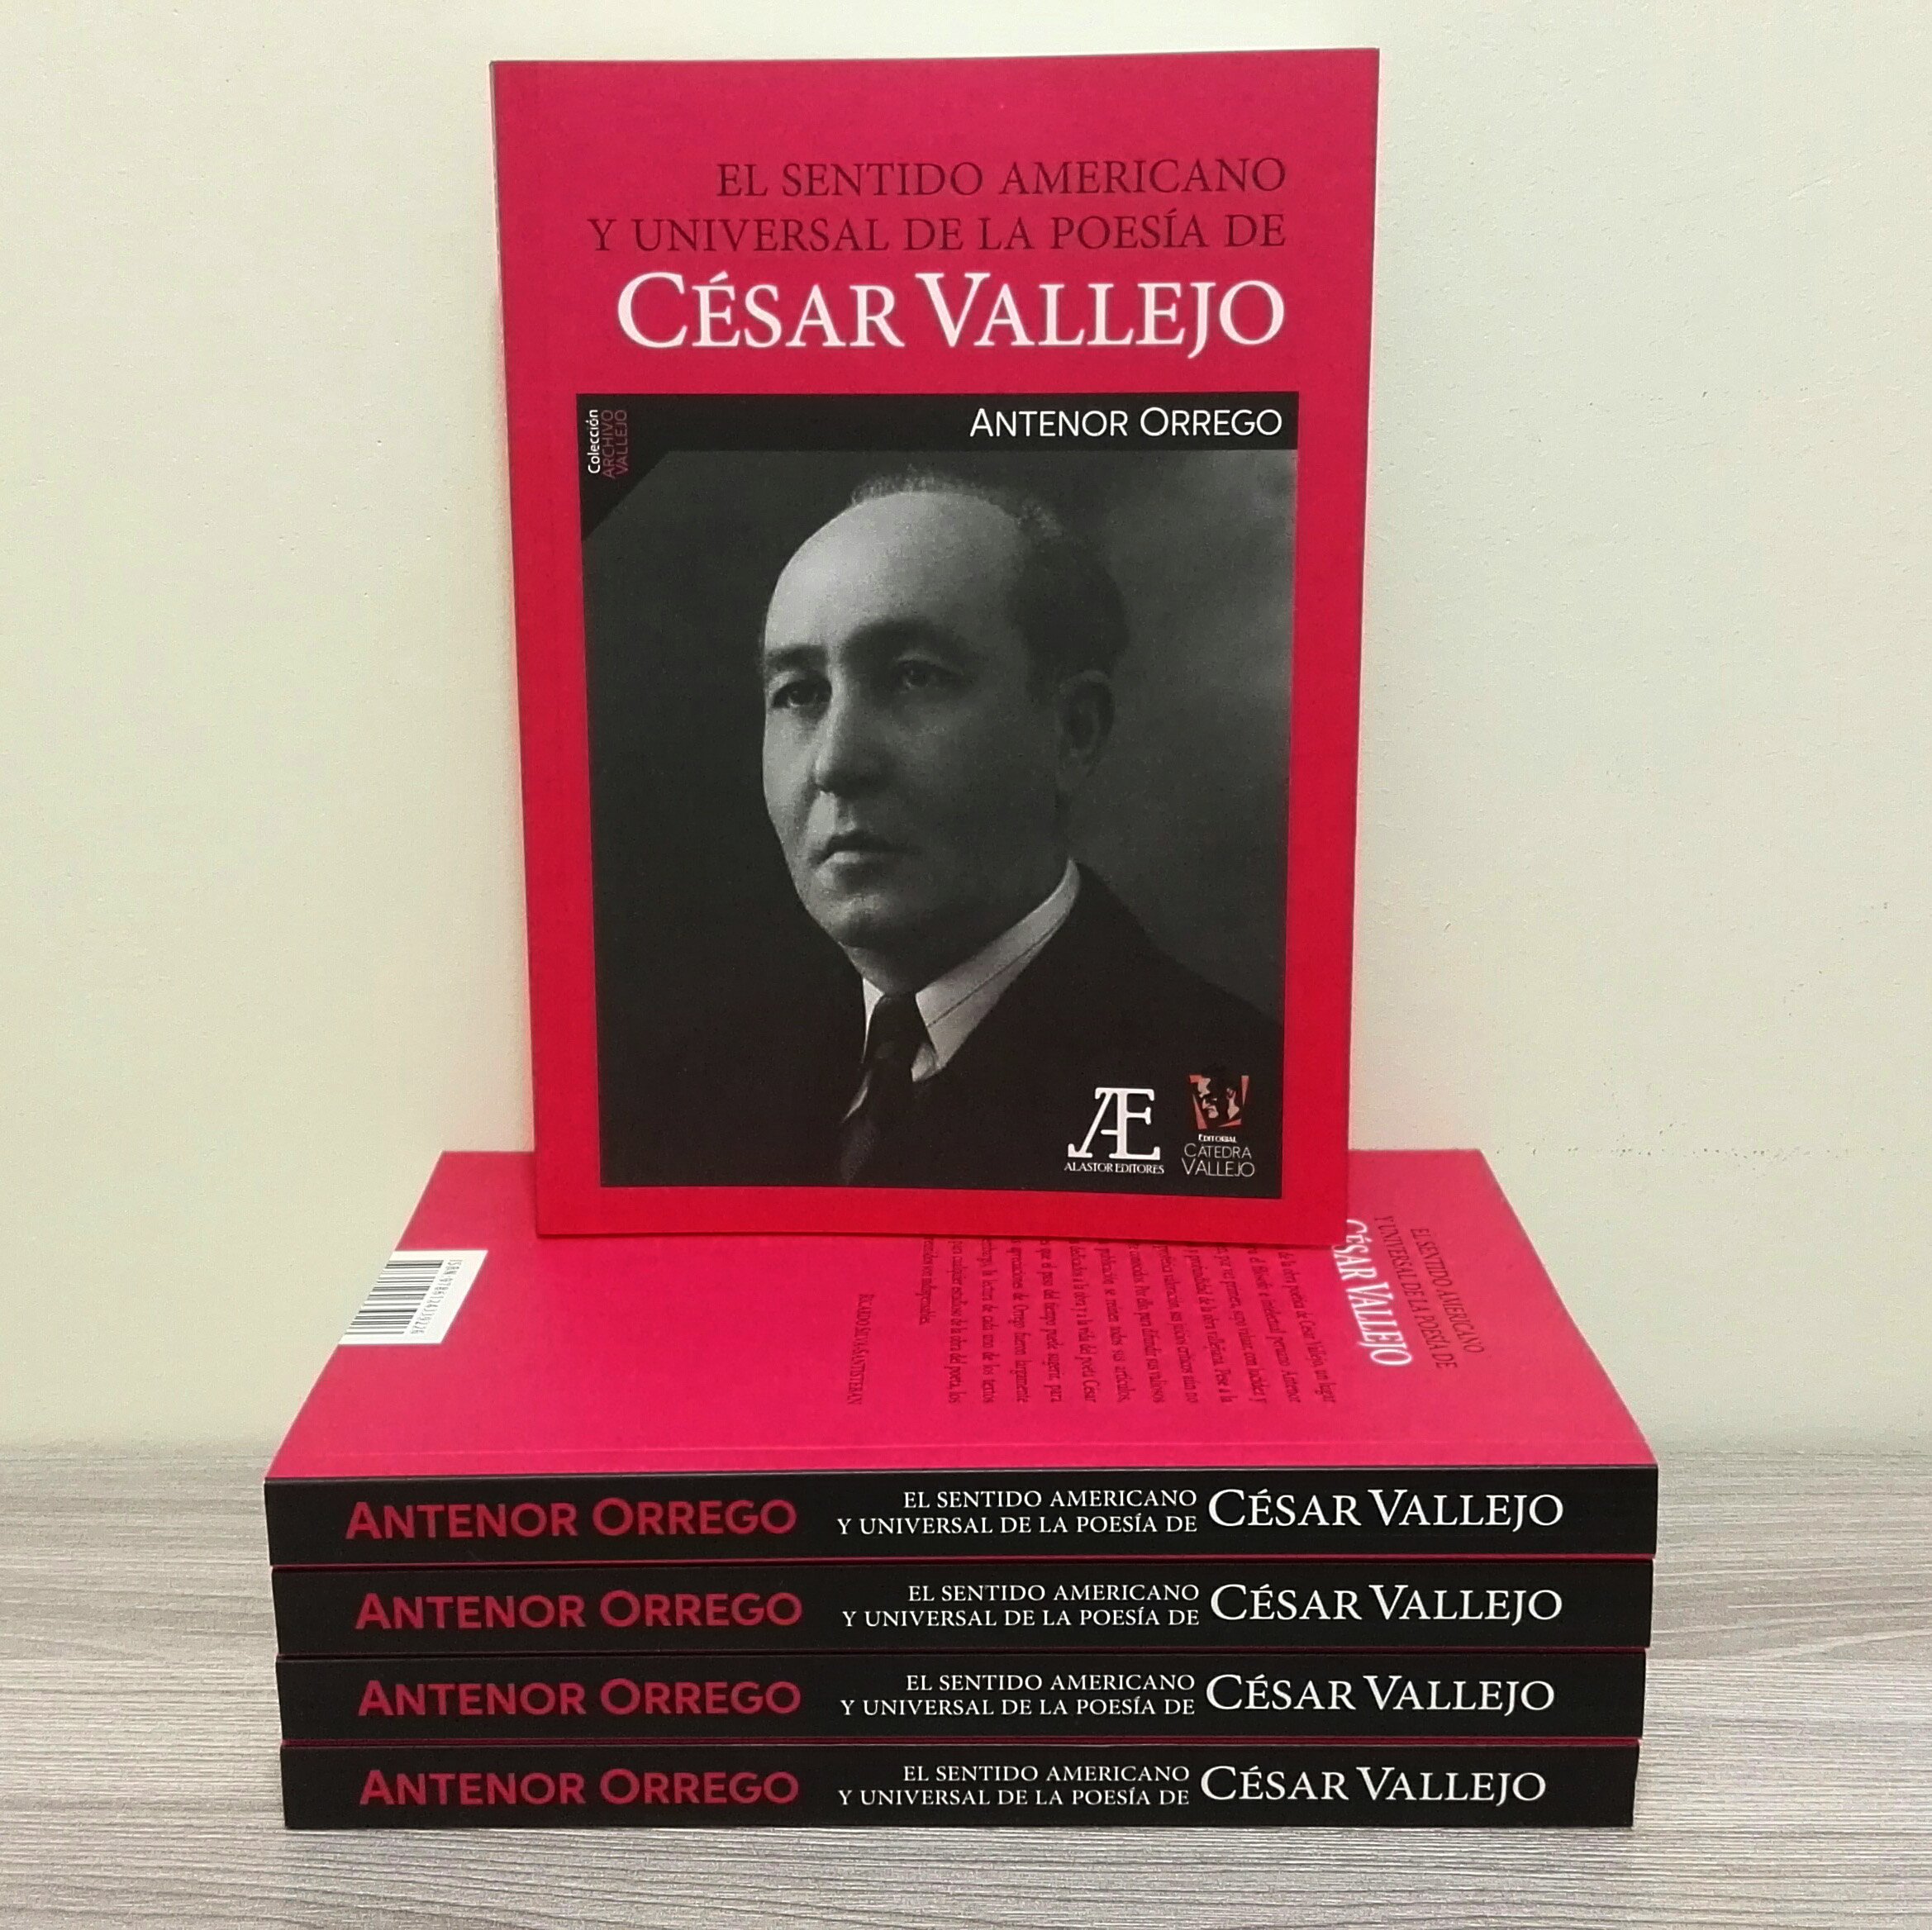 Alastor Editores on X: "El sentido americano y universal de la poesía de  César Vallejo, libro que reúne los ensayos que Antenor Orrego dedicó al  poeta, será presentado en la ciudad de #